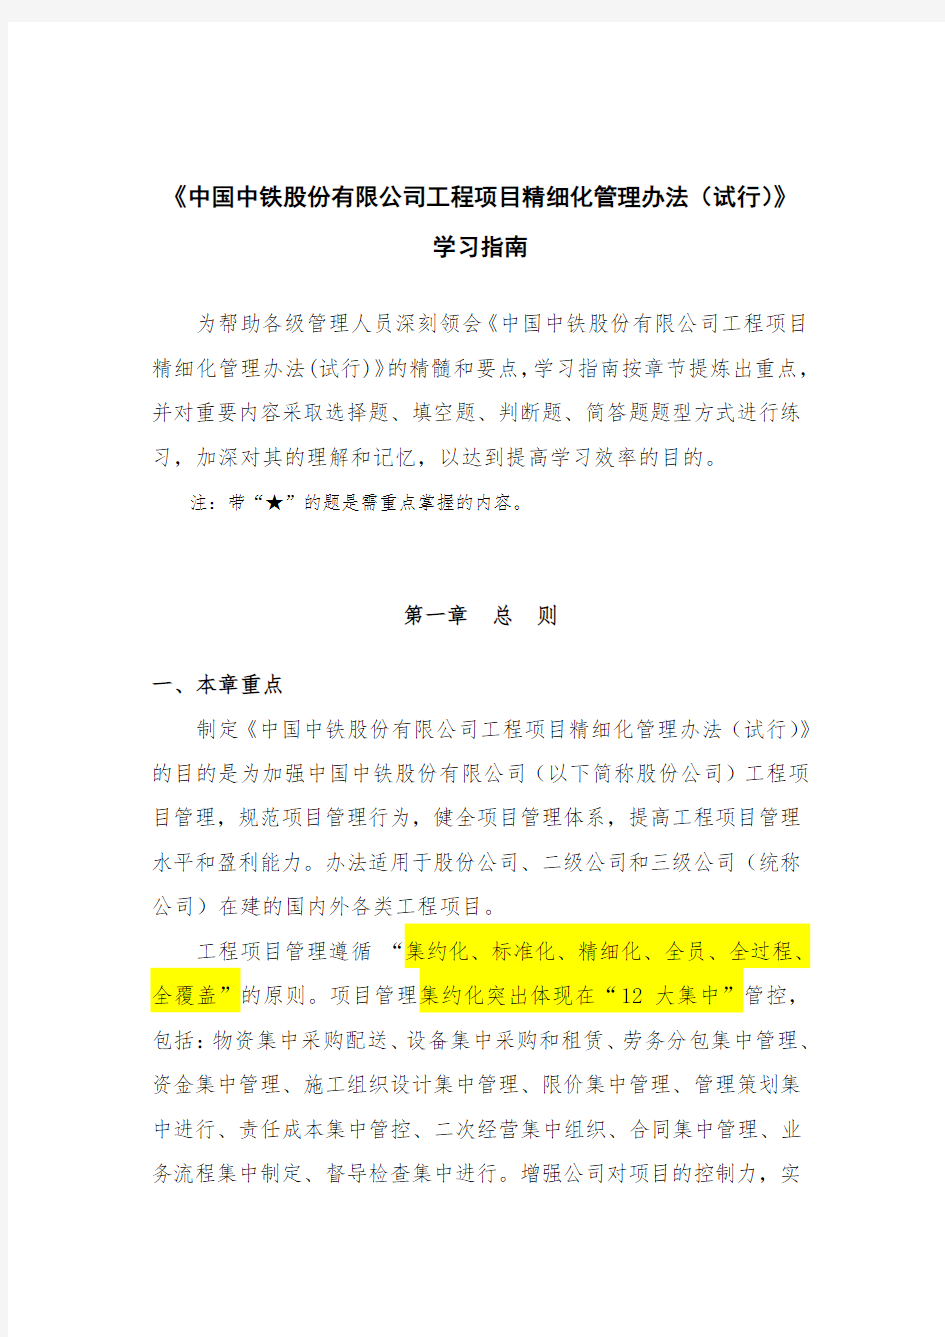 中国中铁股份有限公司工程项目精细化管理办法